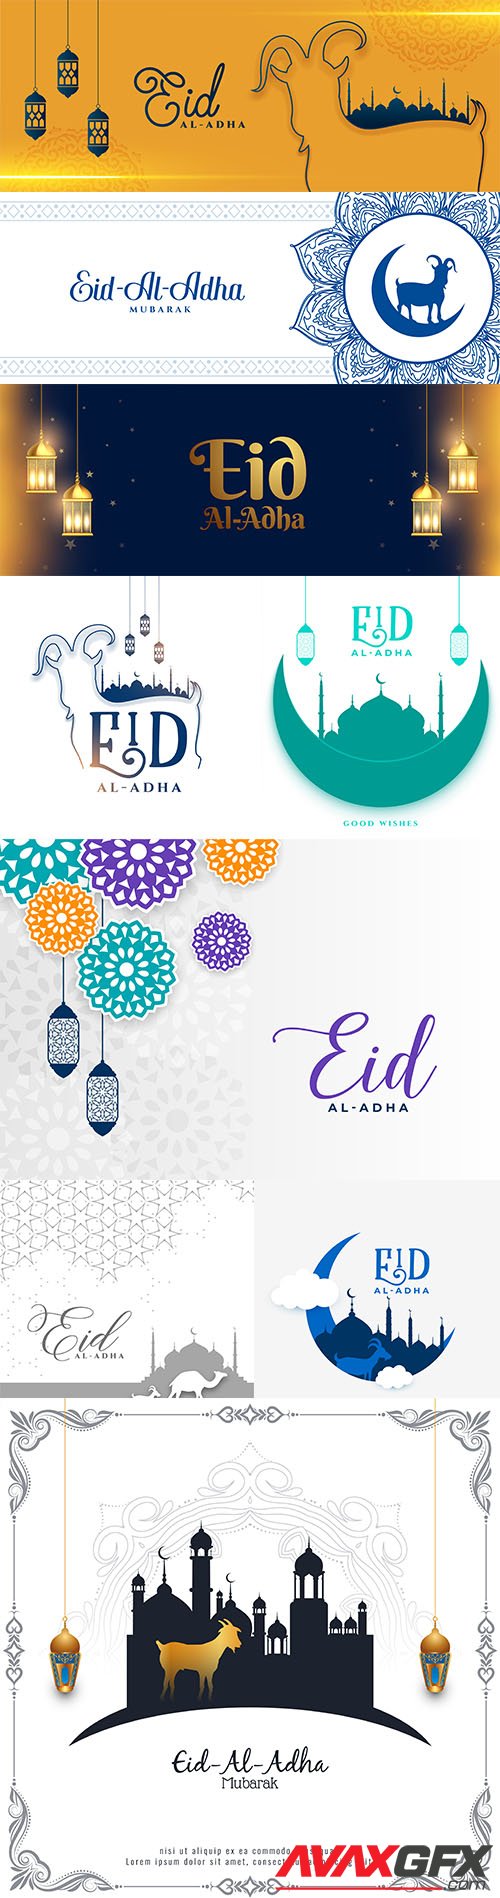 Eid al adha islamic festival banner design